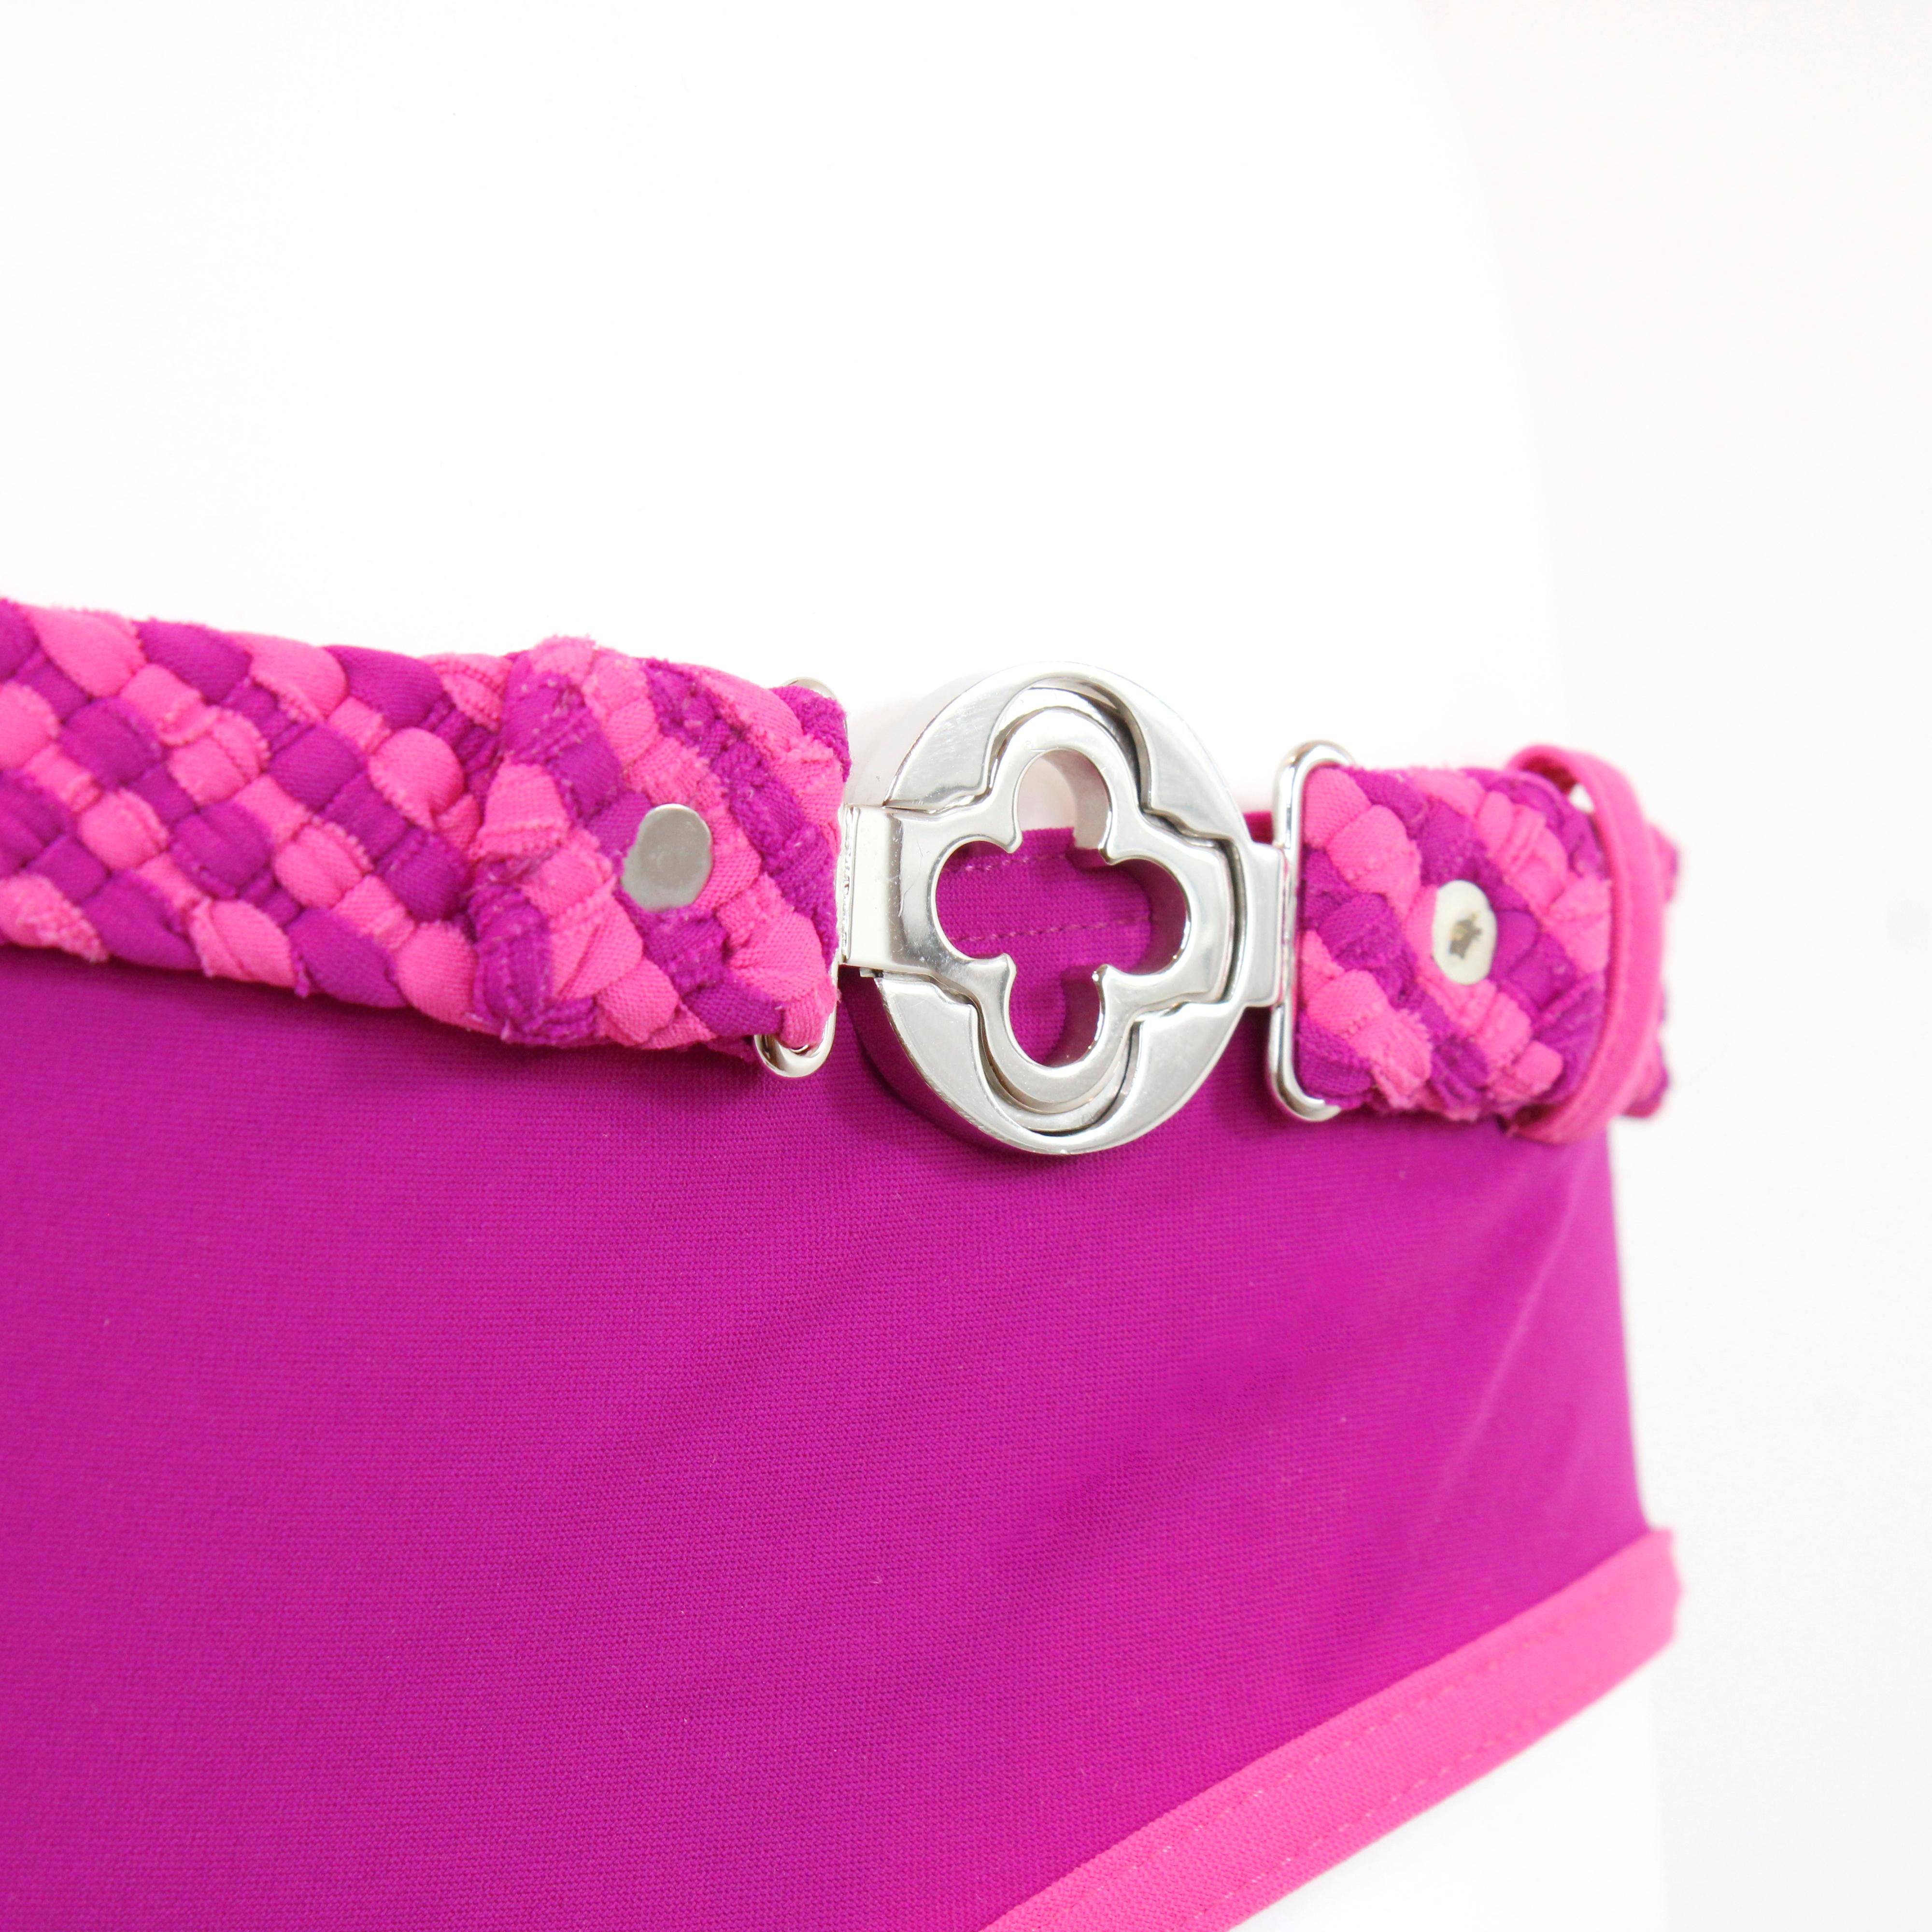 Louis Vuitton Bikini / zweiteilige Bademode Farbe fucsia / rosa, Silber Metallic-Logo, Größe 38 FR.

Bedingung: 
Wirklich gut.